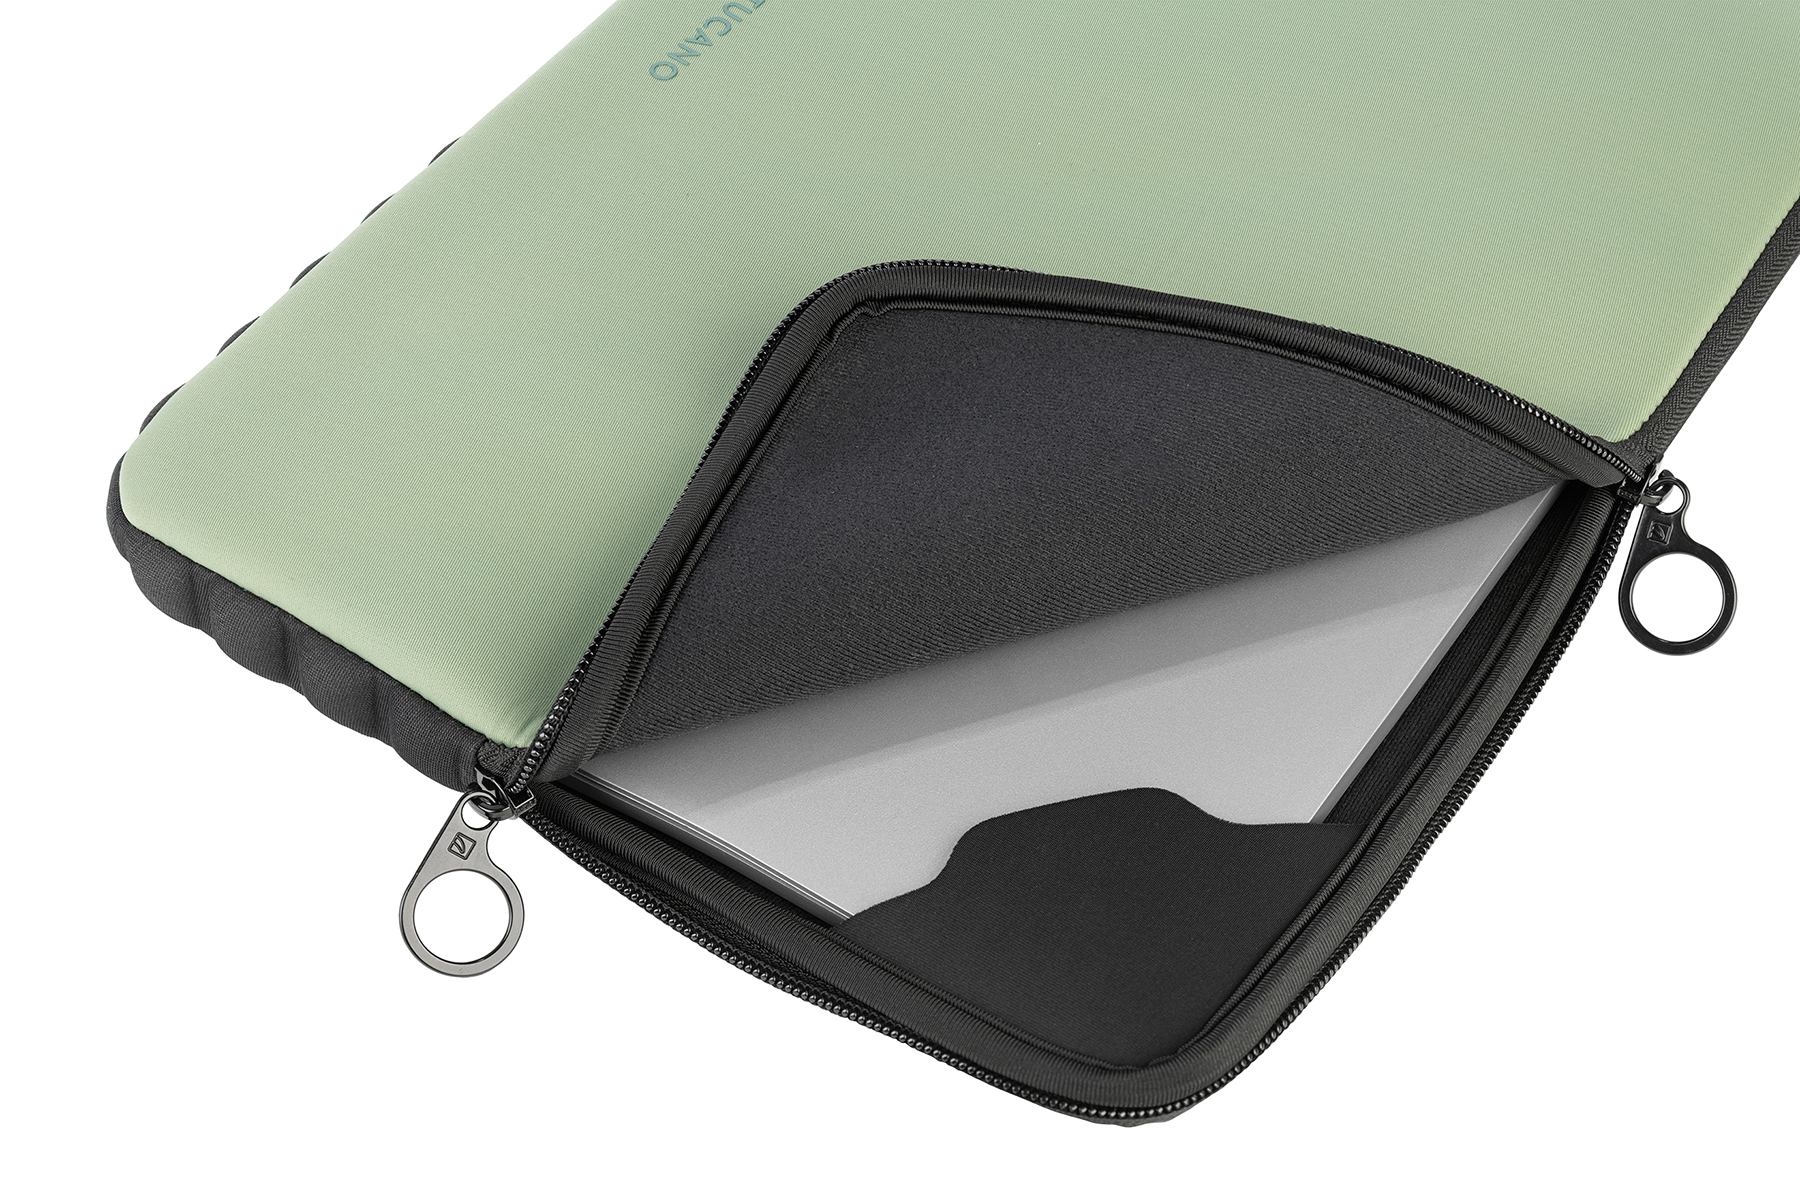 TUCANO Sleeve Notebook Grün Second Offroad Neopren, Tasche Universal Skin für